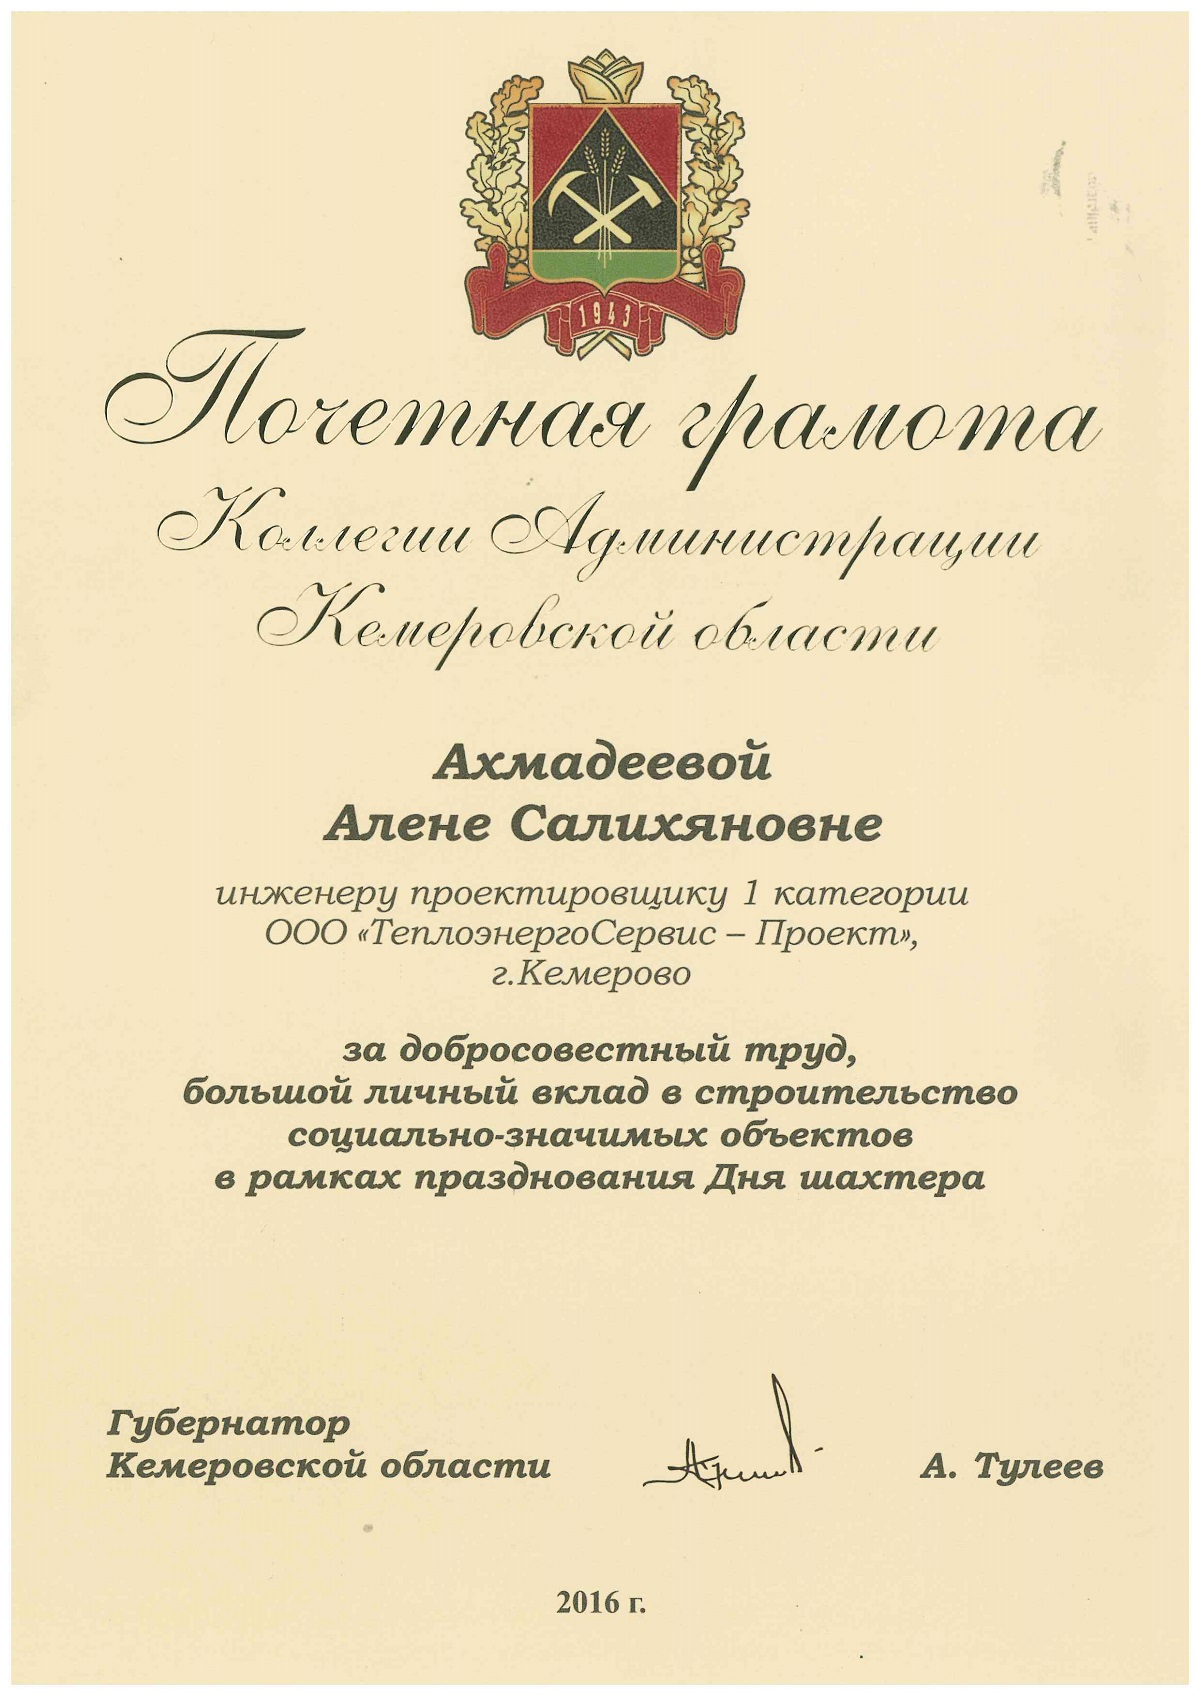 Почетная грамота Коллегии Администрации Кемеровской области Ахмадеевой Алене Салихяновне